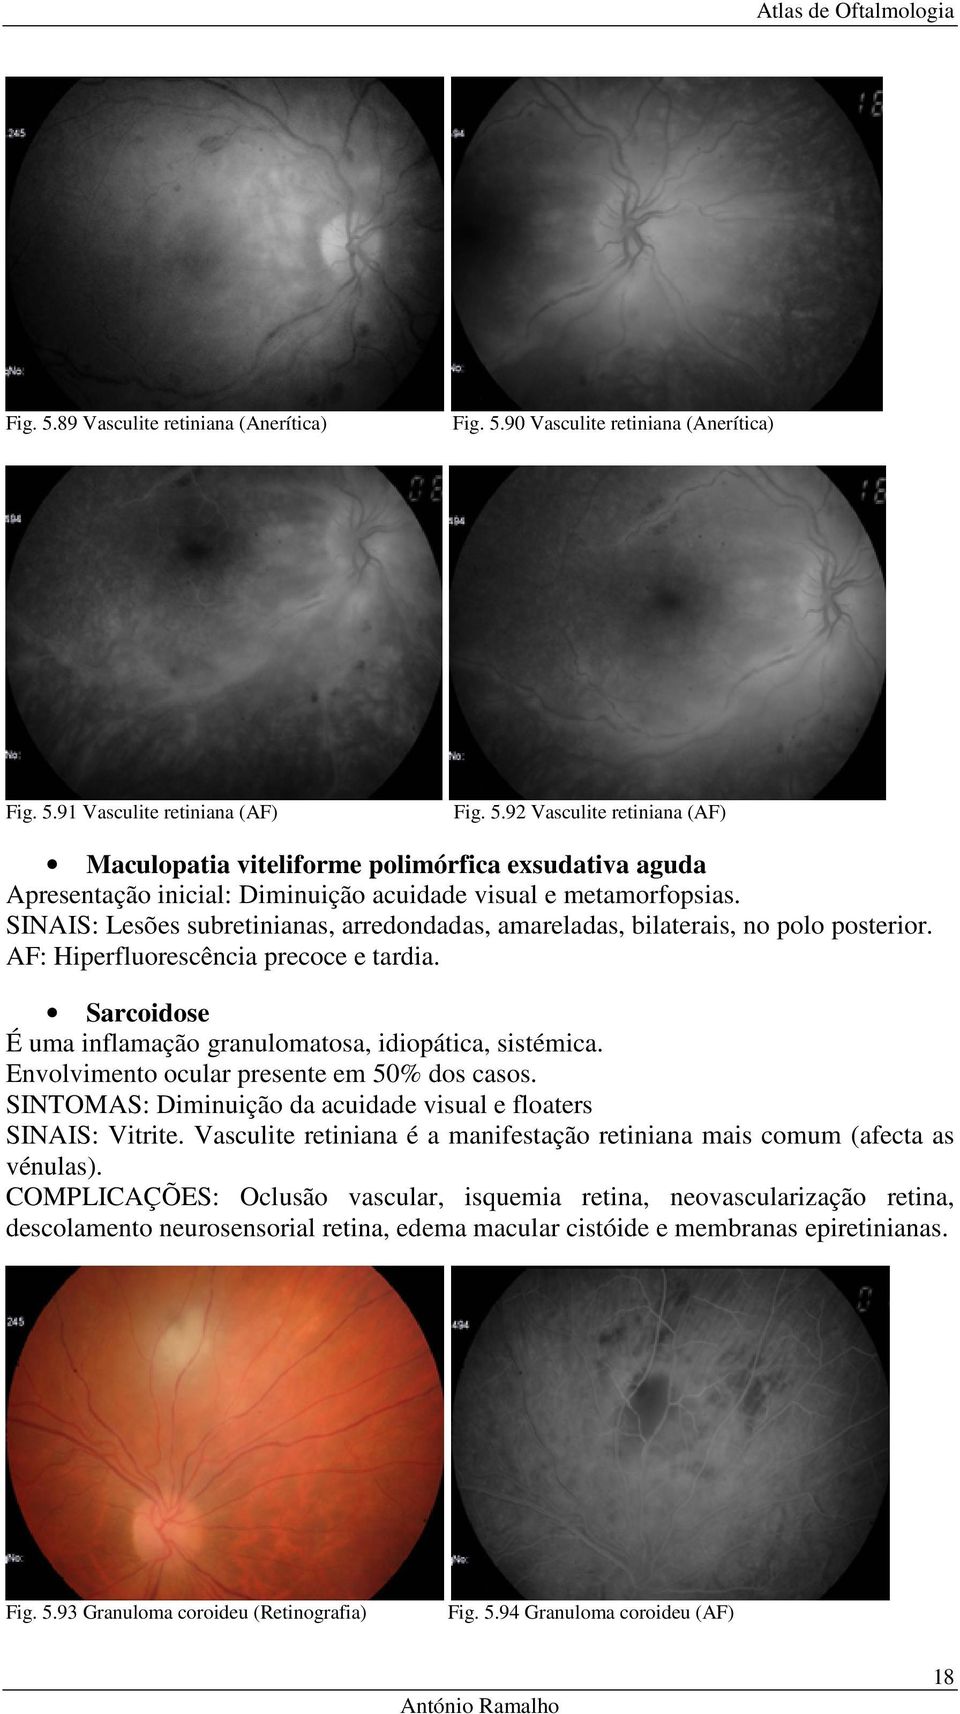 Envolvimento ocular presente em 50% dos casos. SINTOMAS: Diminuição da acuidade visual e floaters SINAIS: Vitrite. Vasculite retiniana é a manifestação retiniana mais comum (afecta as vénulas).